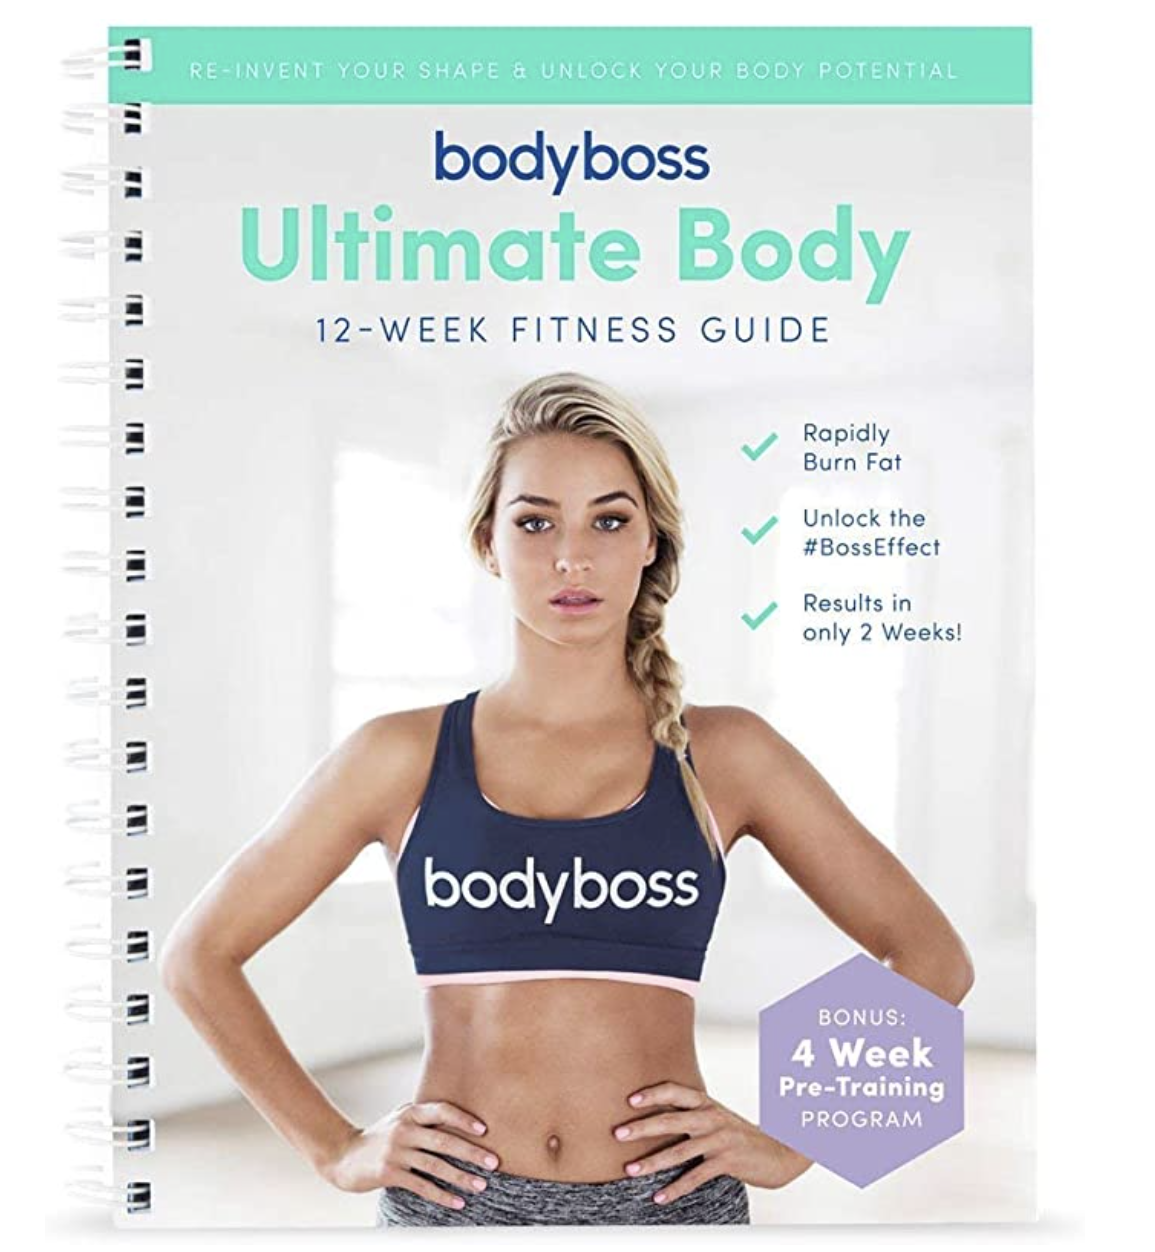 Ultimate Body Workout - Bodyboss